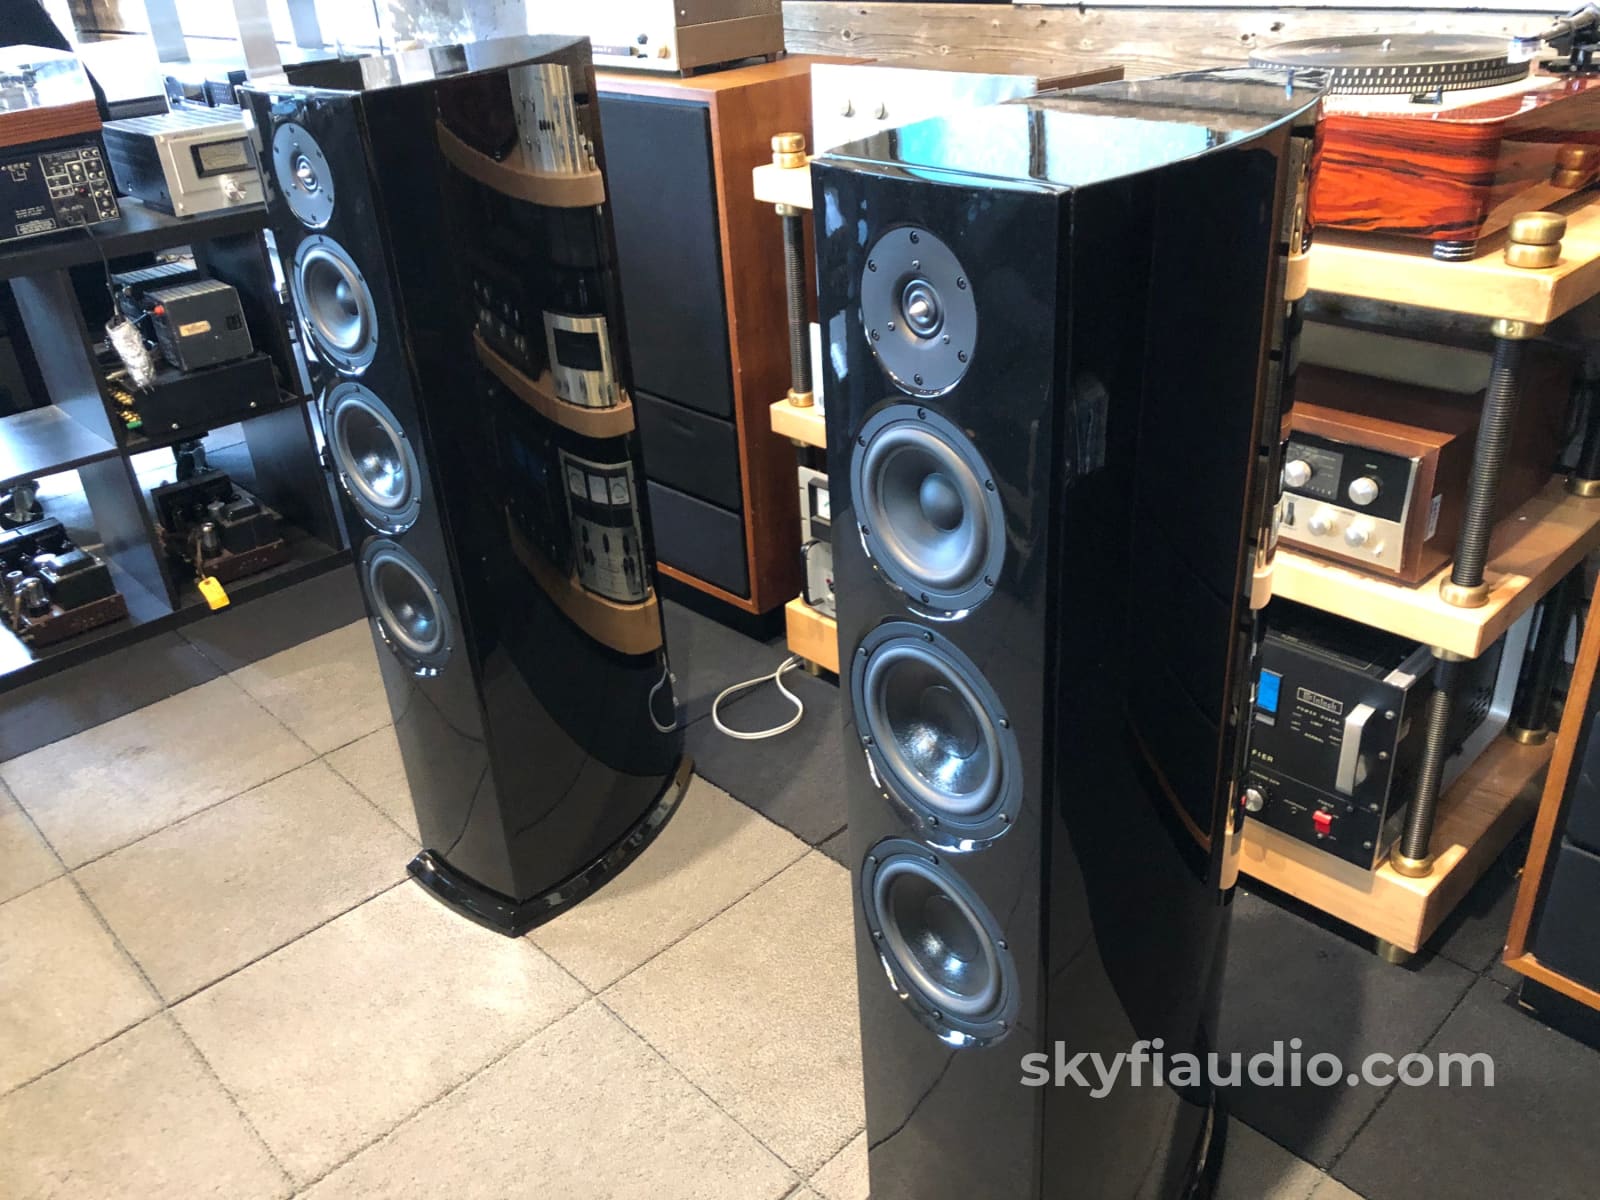 Aerial Acoustics 7T Loudspeakers In Gloss Black - Full Range Speakers